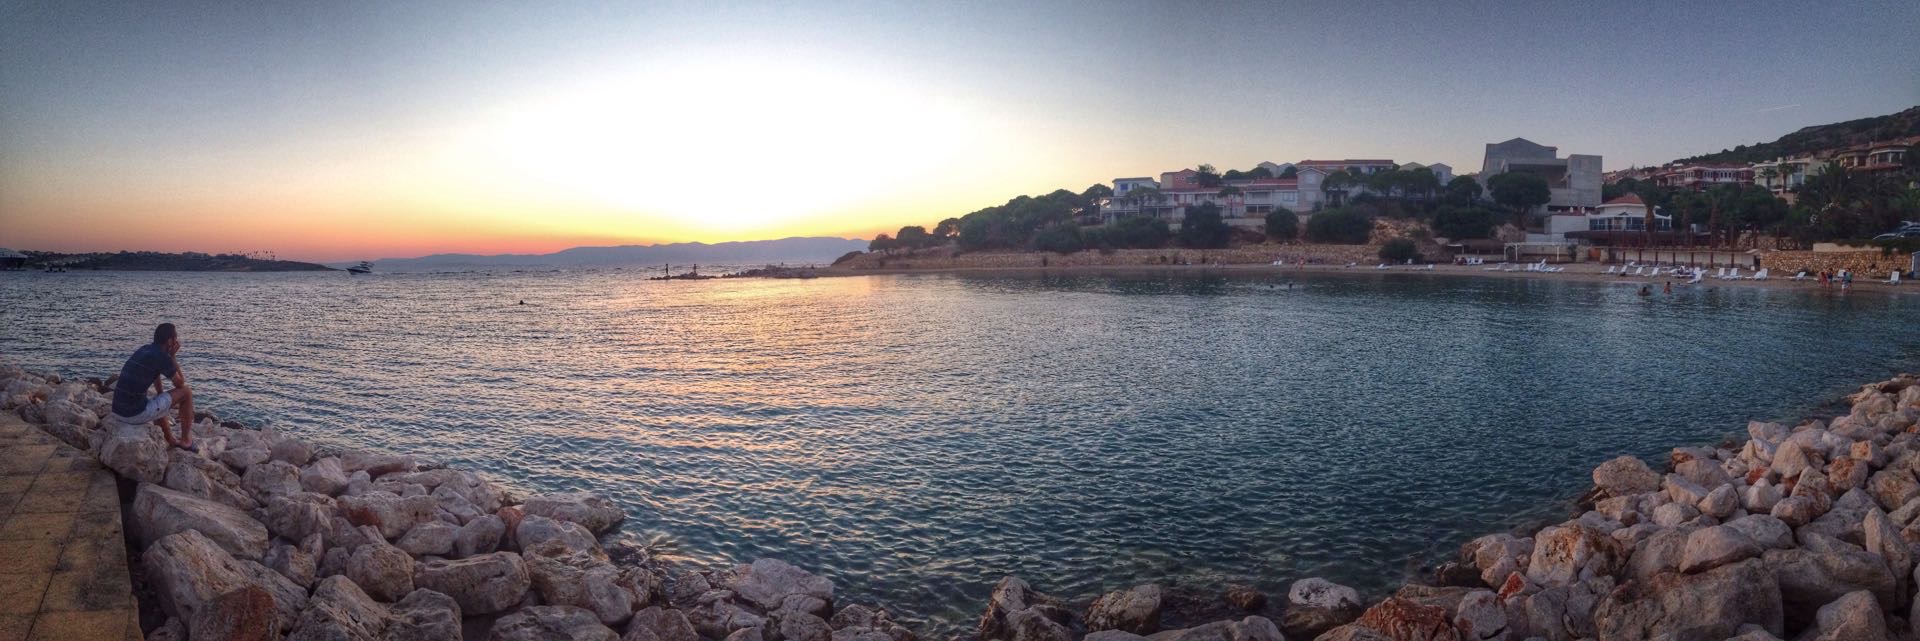 爱琴海的夕阳下 你又在思念着谁……